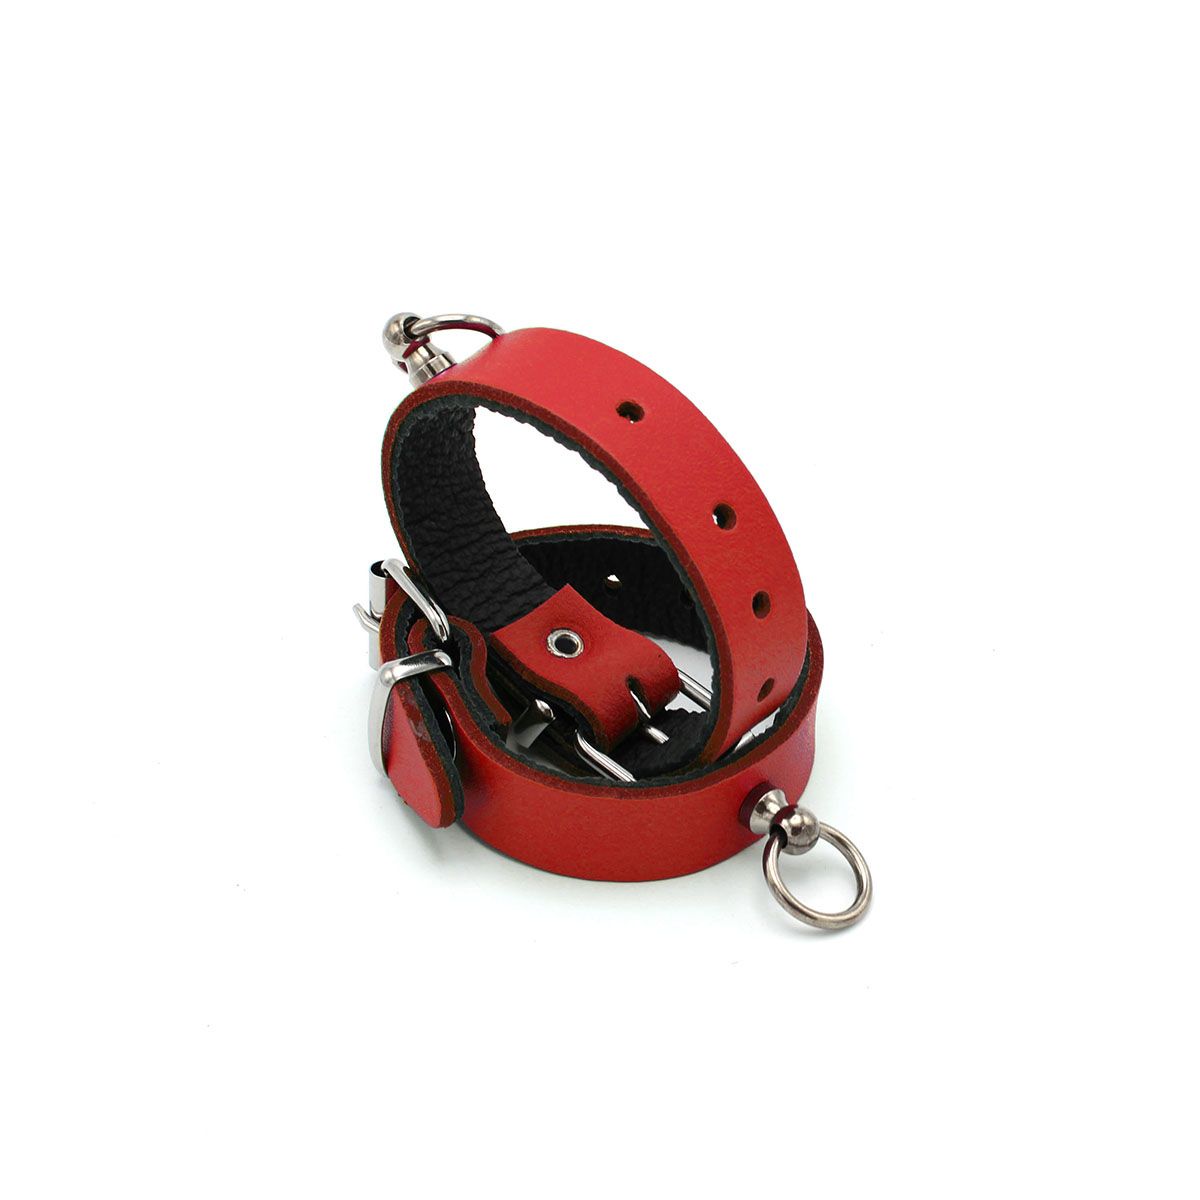 Kiotos Leather - Polsboeien Leder met Kleine O-ring - Rood-Erotiekvoordeel.nl